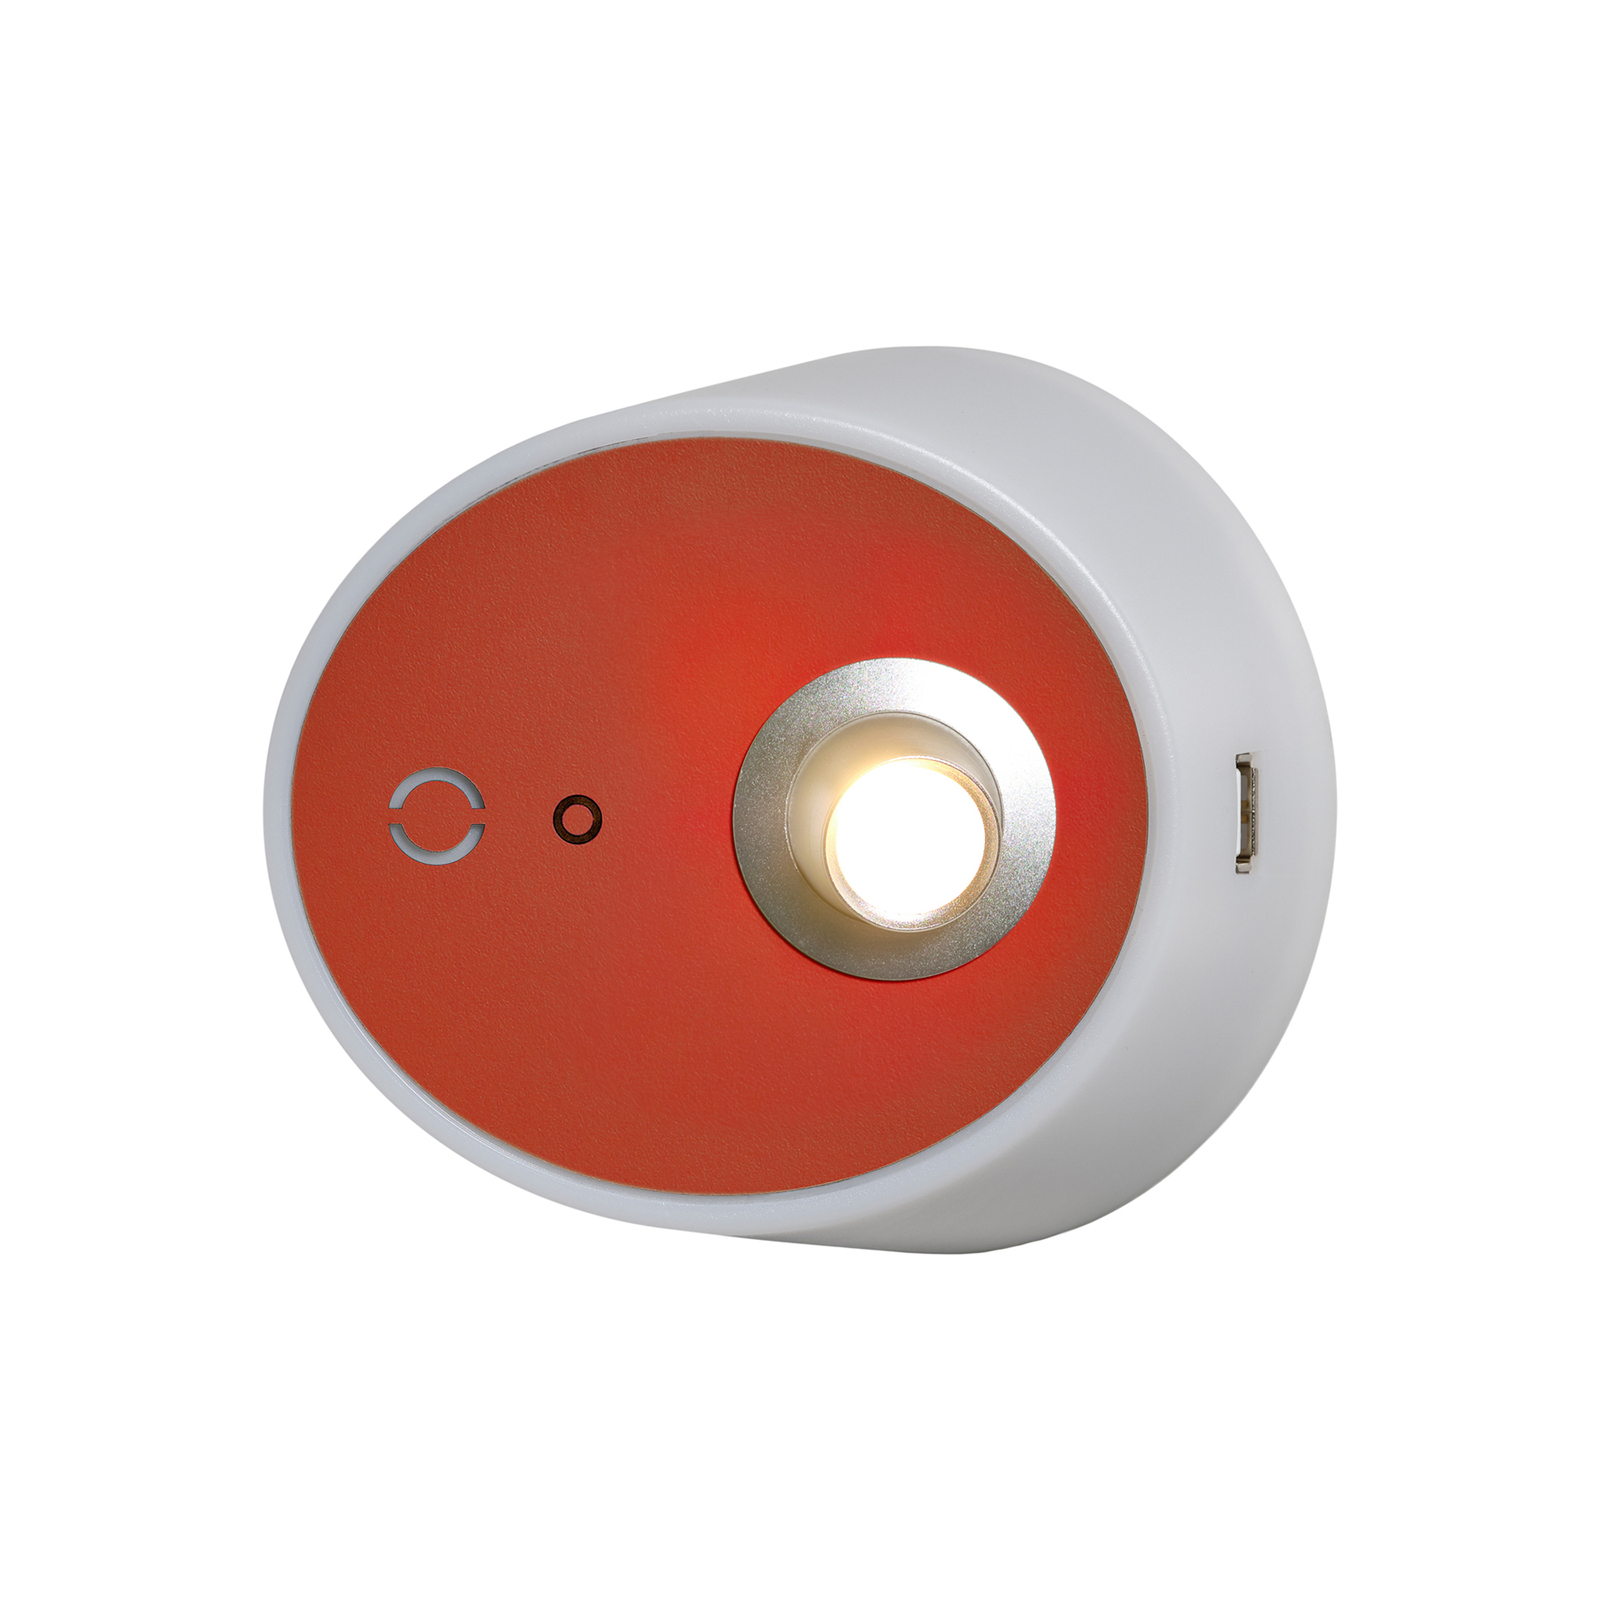 LED nástěnné světlo Zoom, bodovka, USB, terakota